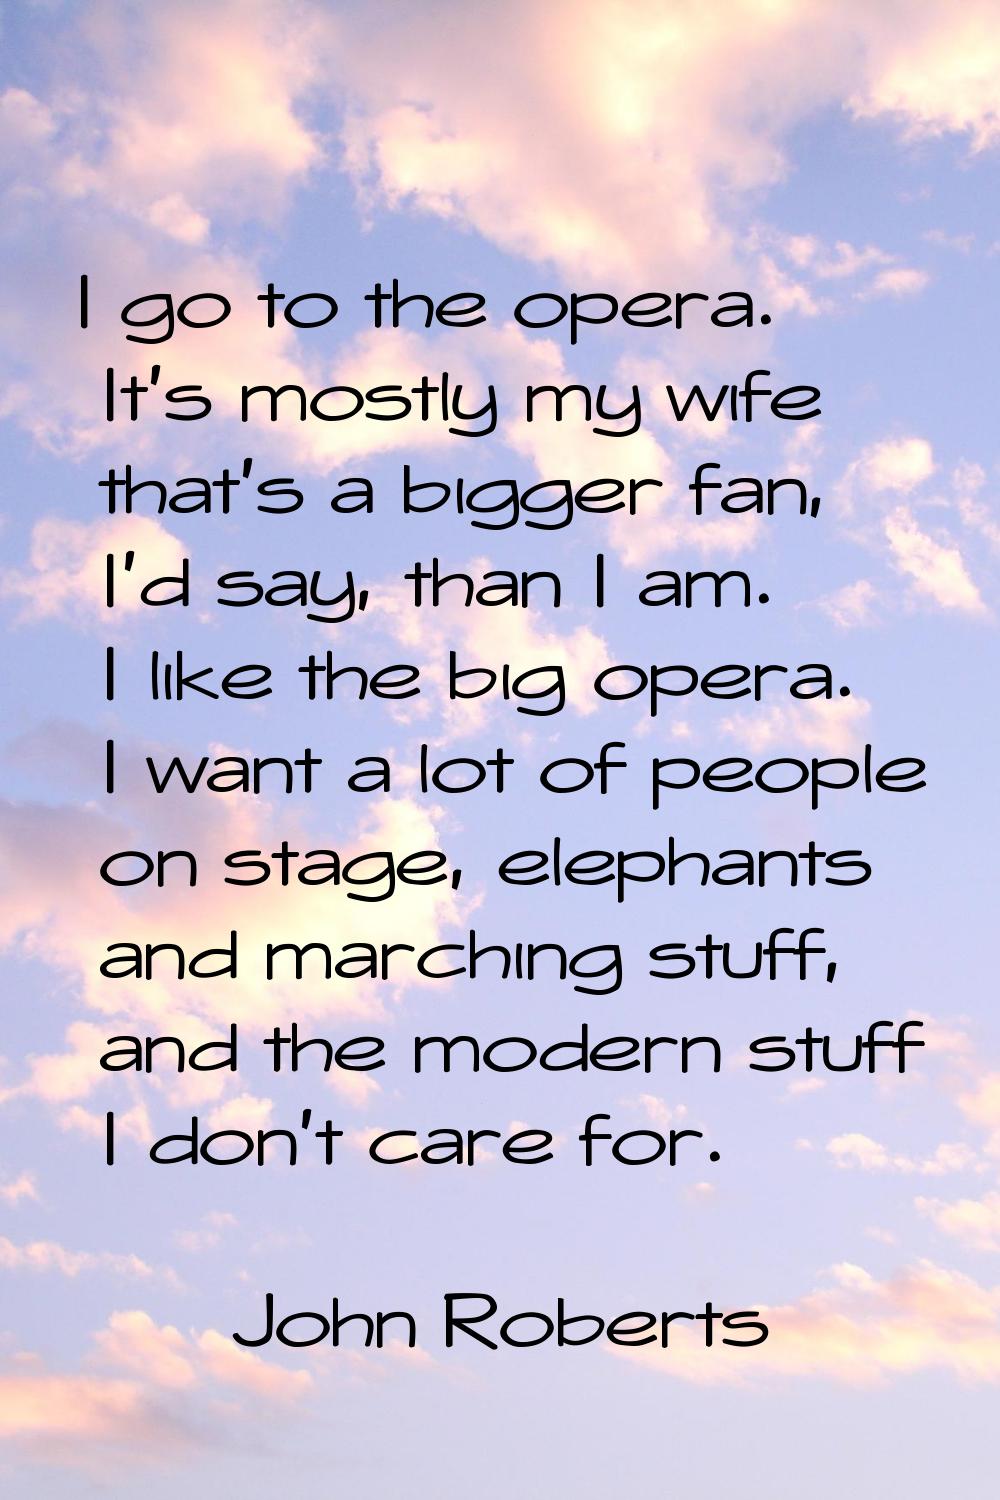 I go to the opera. It's mostly my wife that's a bigger fan, I'd say, than I am. I like the big oper